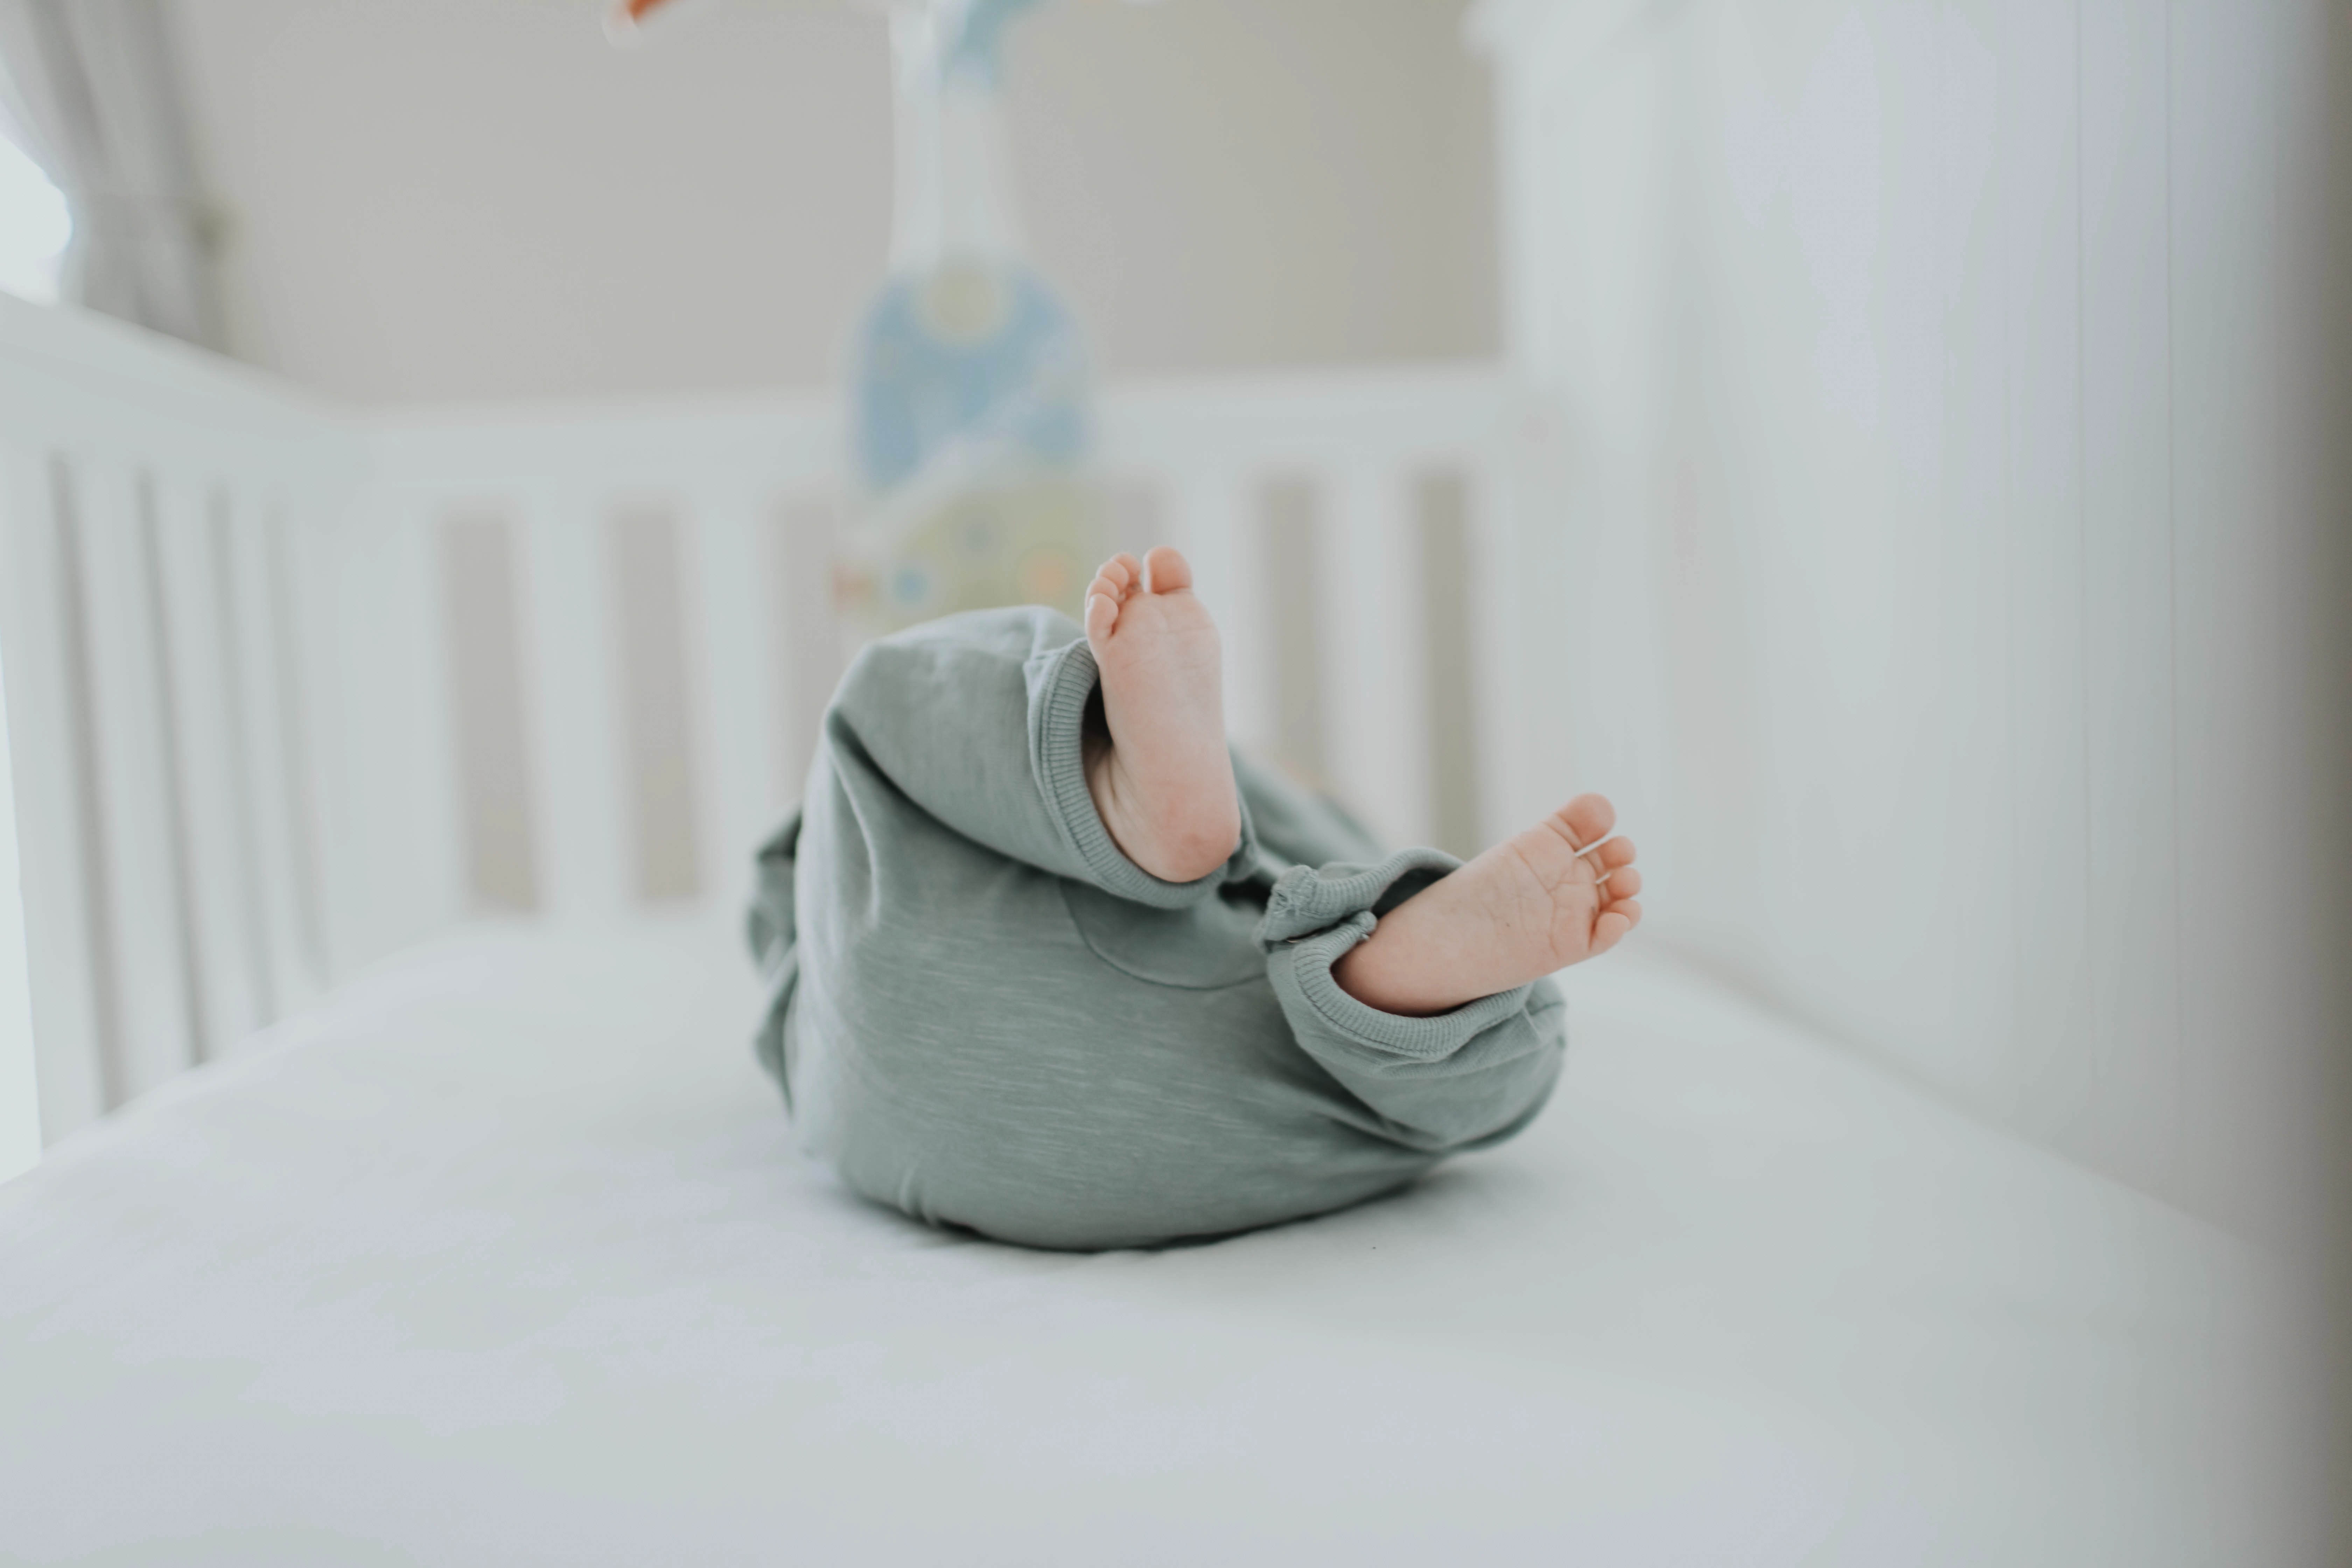 Bebê recém-nascido no berço (Foto: Leah Kelley/Pexels)